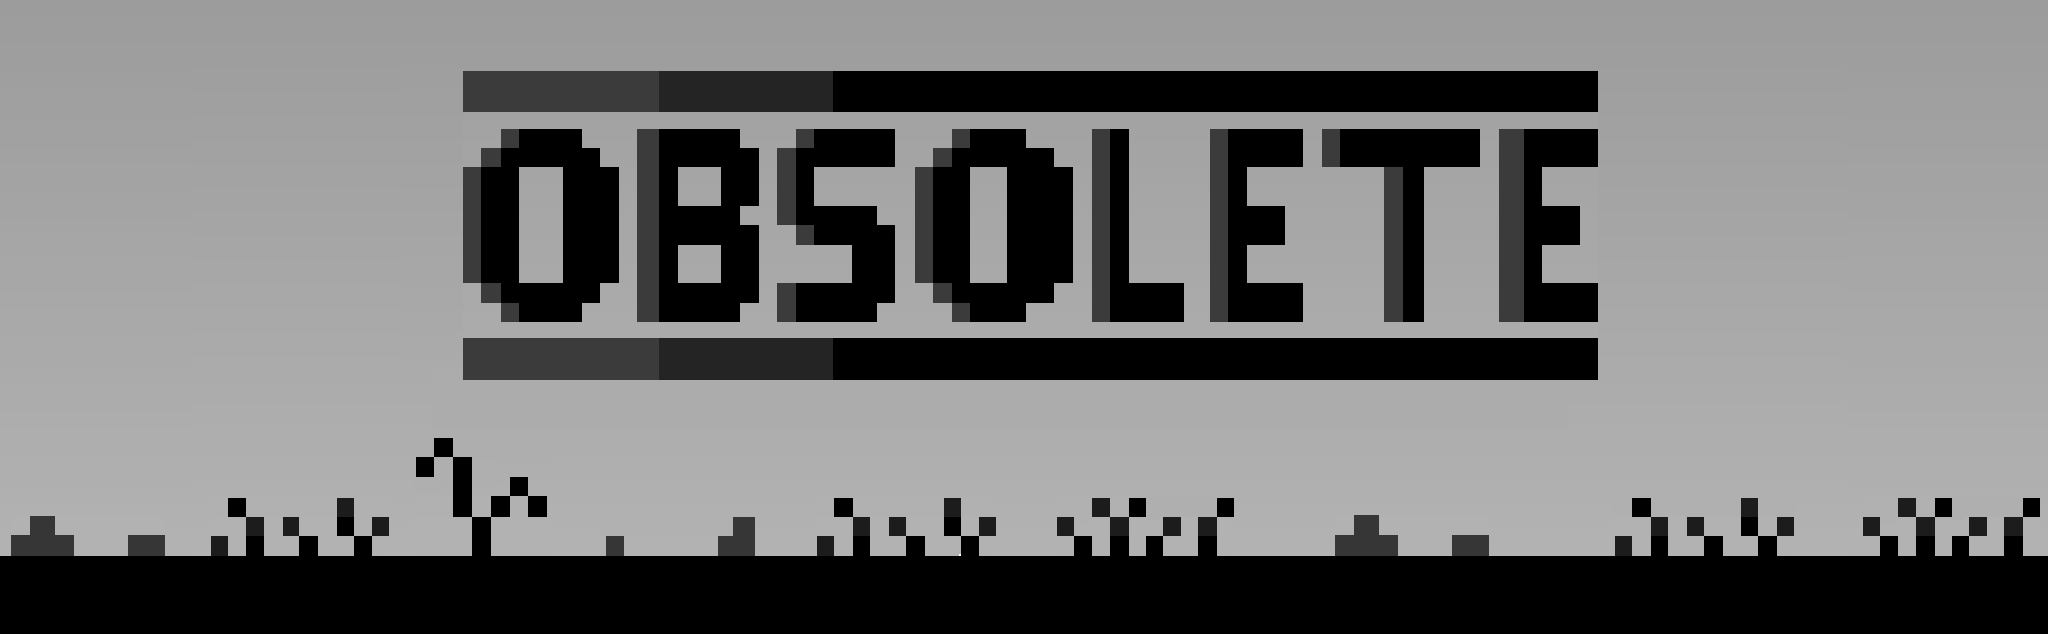 Obsolete